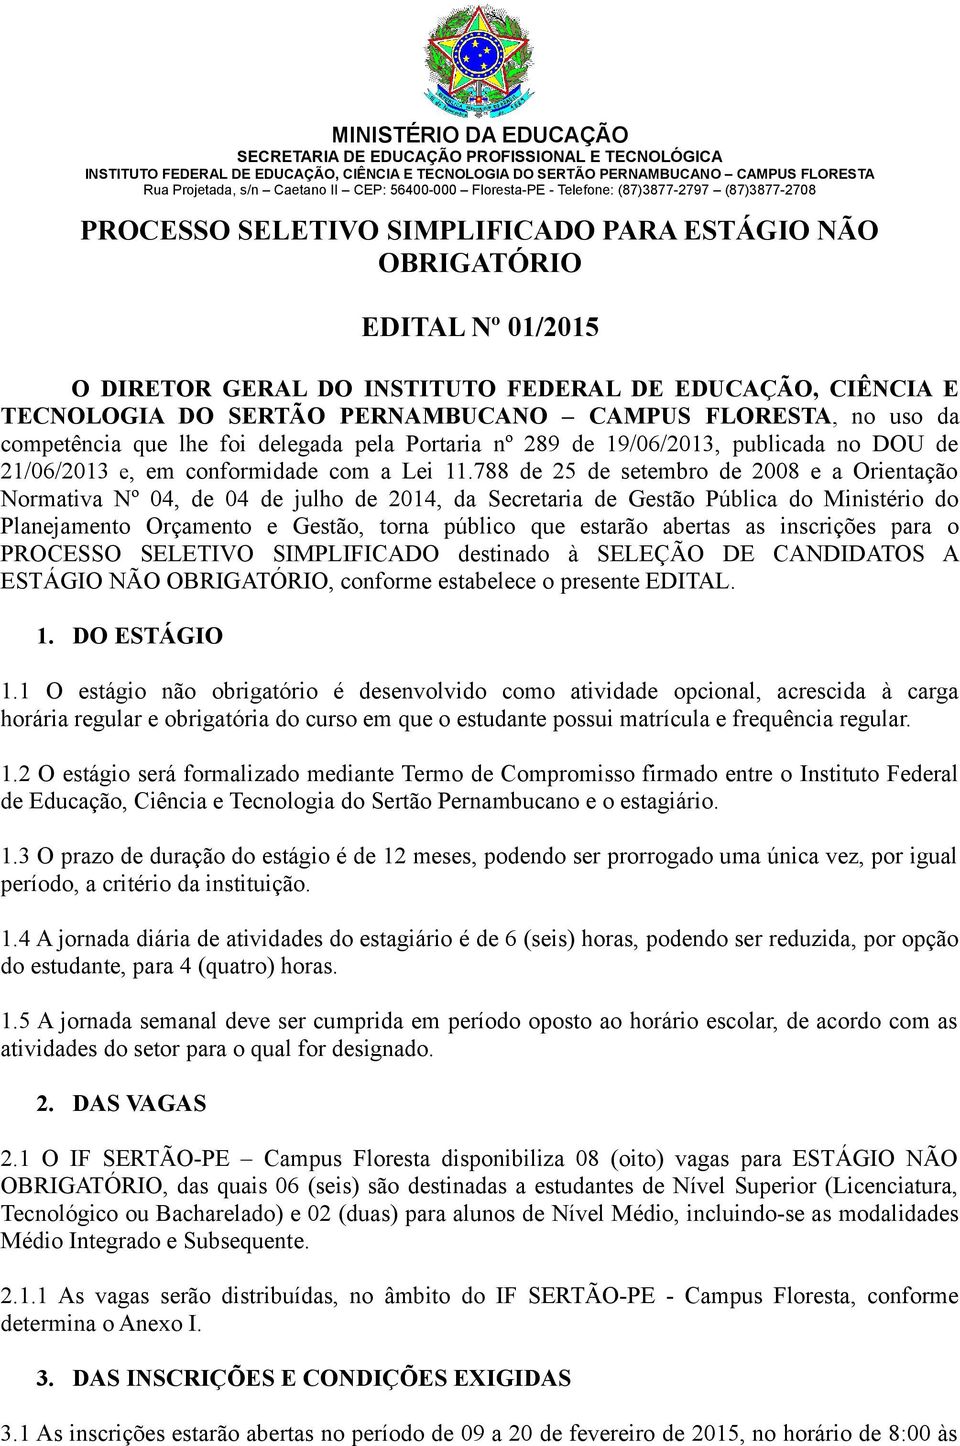 TECNOLOGIA DO SERTÃO PERNAMBUCANO CAMPUS FLORESTA, no uso da competência que lhe foi delegada pela Portaria nº 289 de 19/06/2013, publicada no DOU de 21/06/2013 e, em conformidade com a Lei 11.